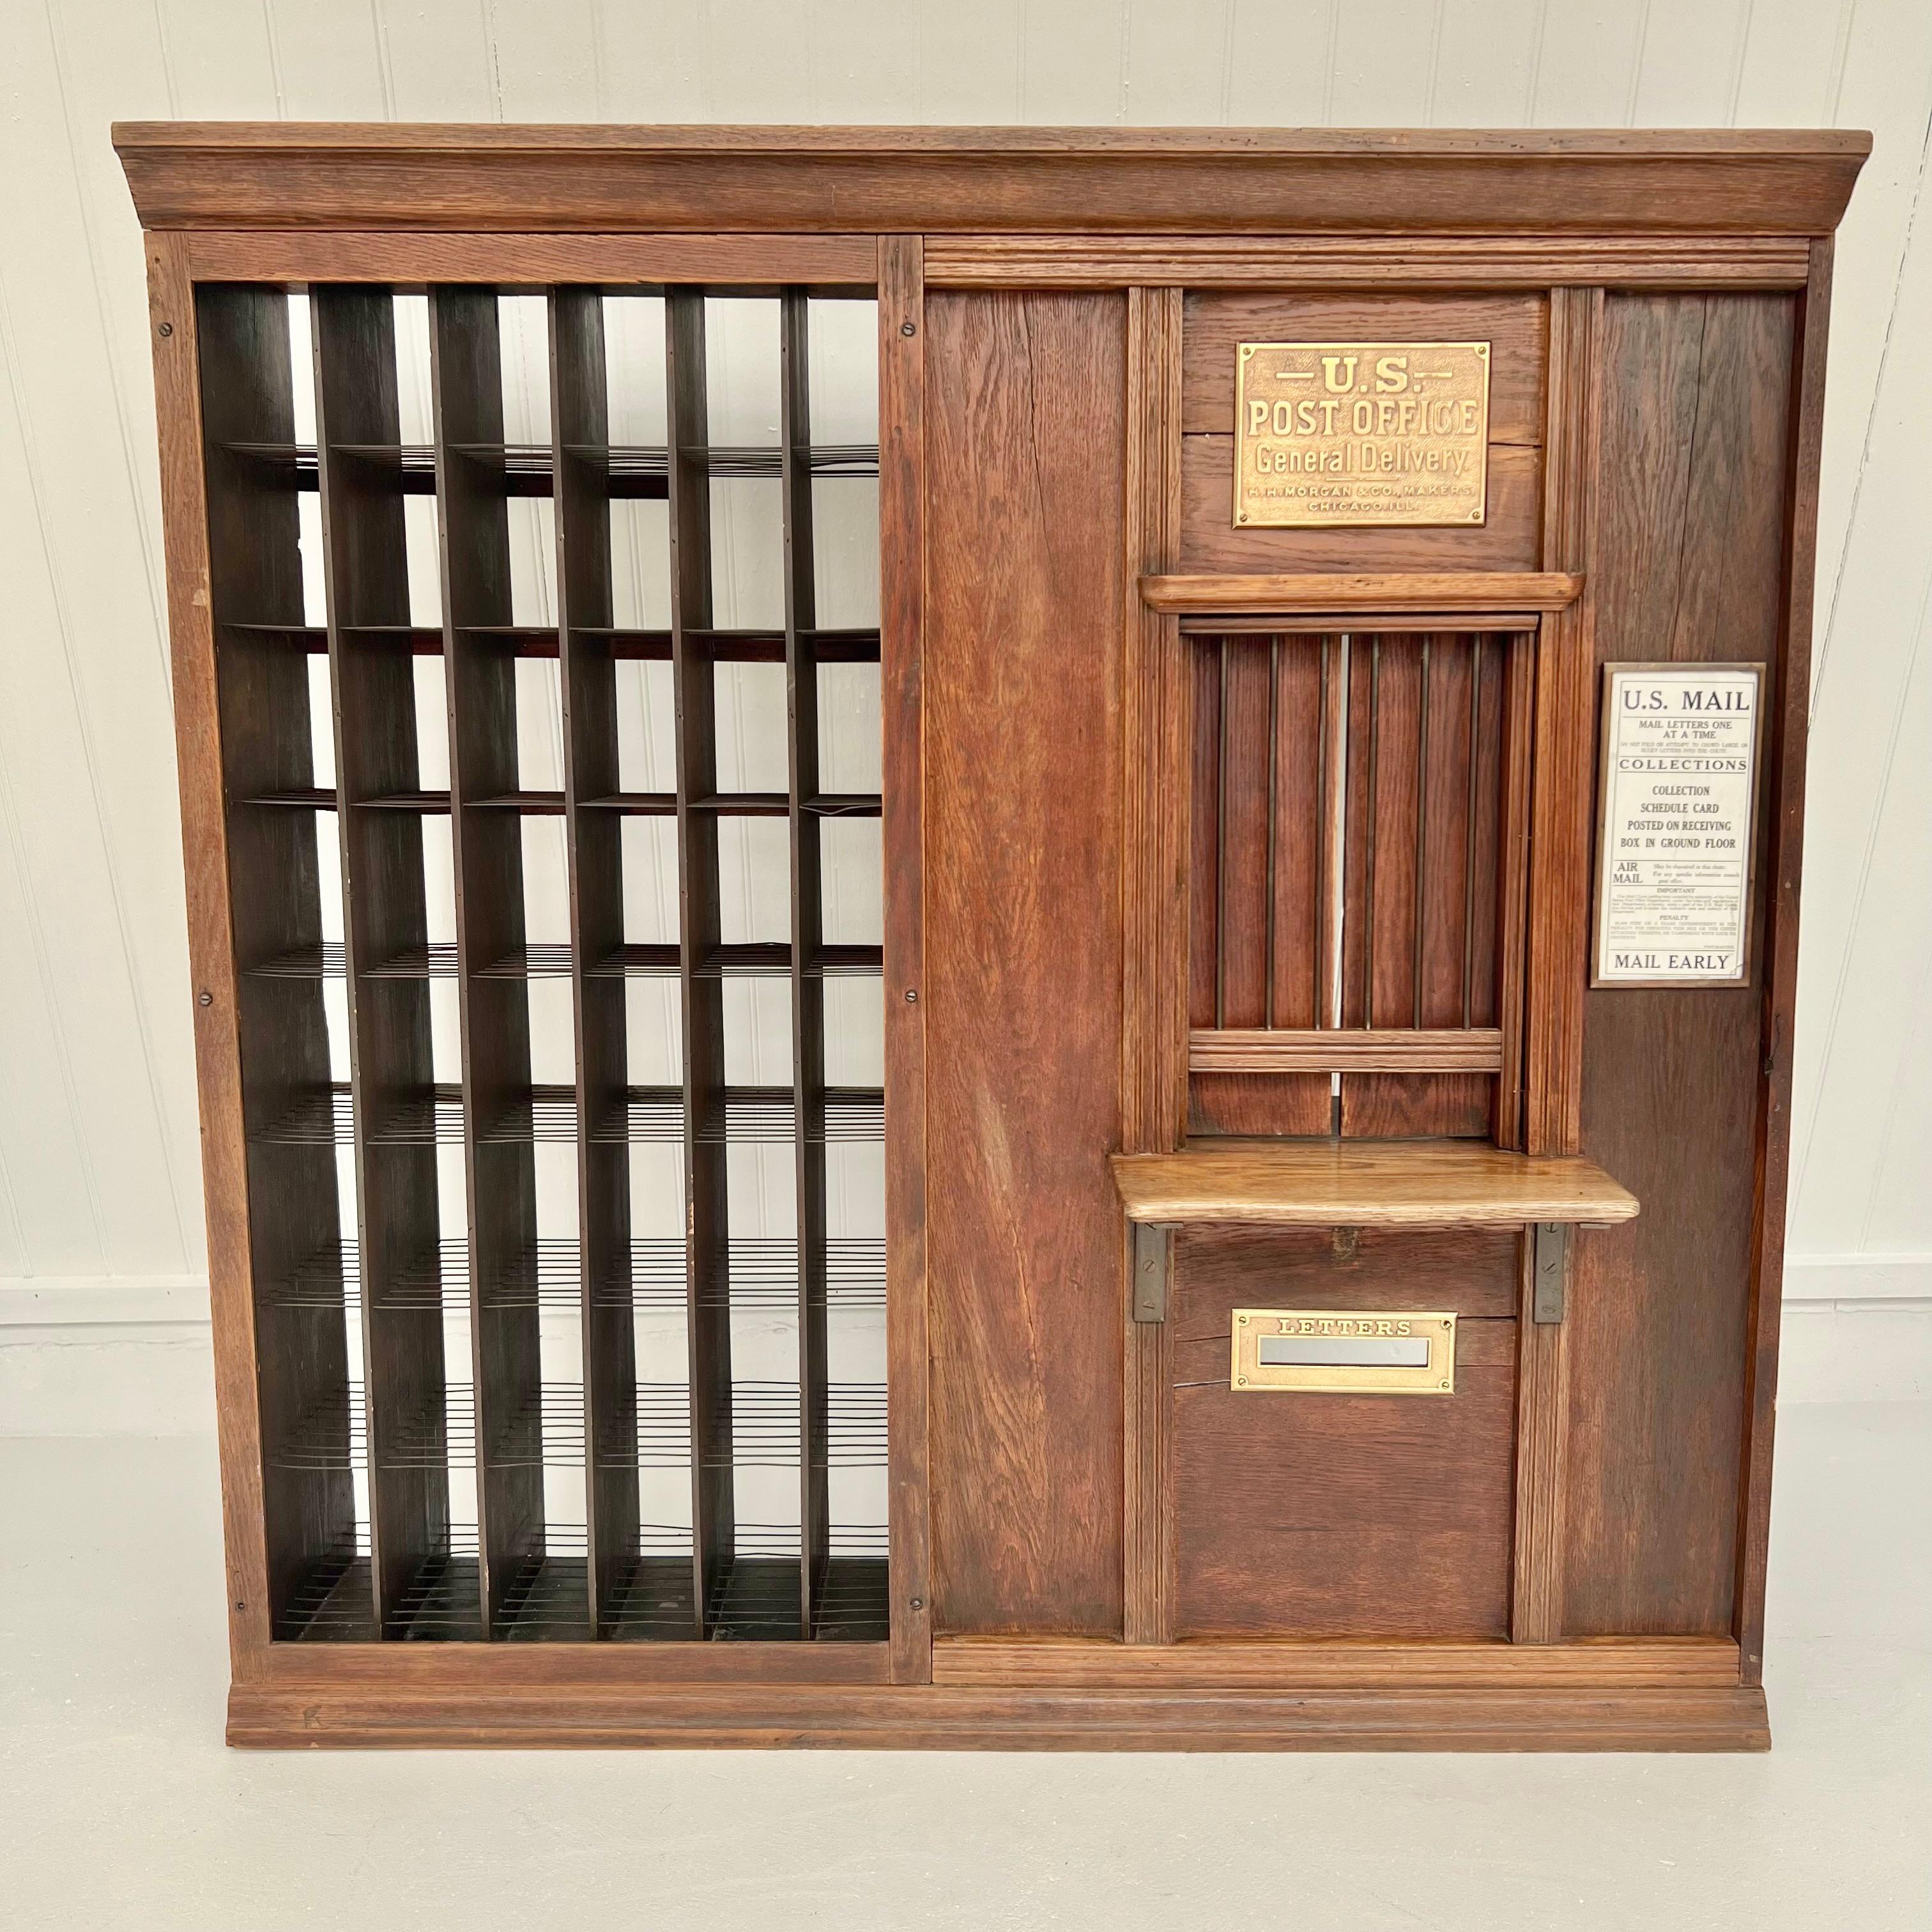 Ein wunderschönes, einzigartiges Postfenster des U.S. Post Office mit Kassiererkäfig aus dem späten 19. Wahrscheinlich in einem Landhandel verwendet. Originale Ausführung aus Eichenholz. Auf dem Messingschild steht 'H.H. Morgan & Co. Makers,